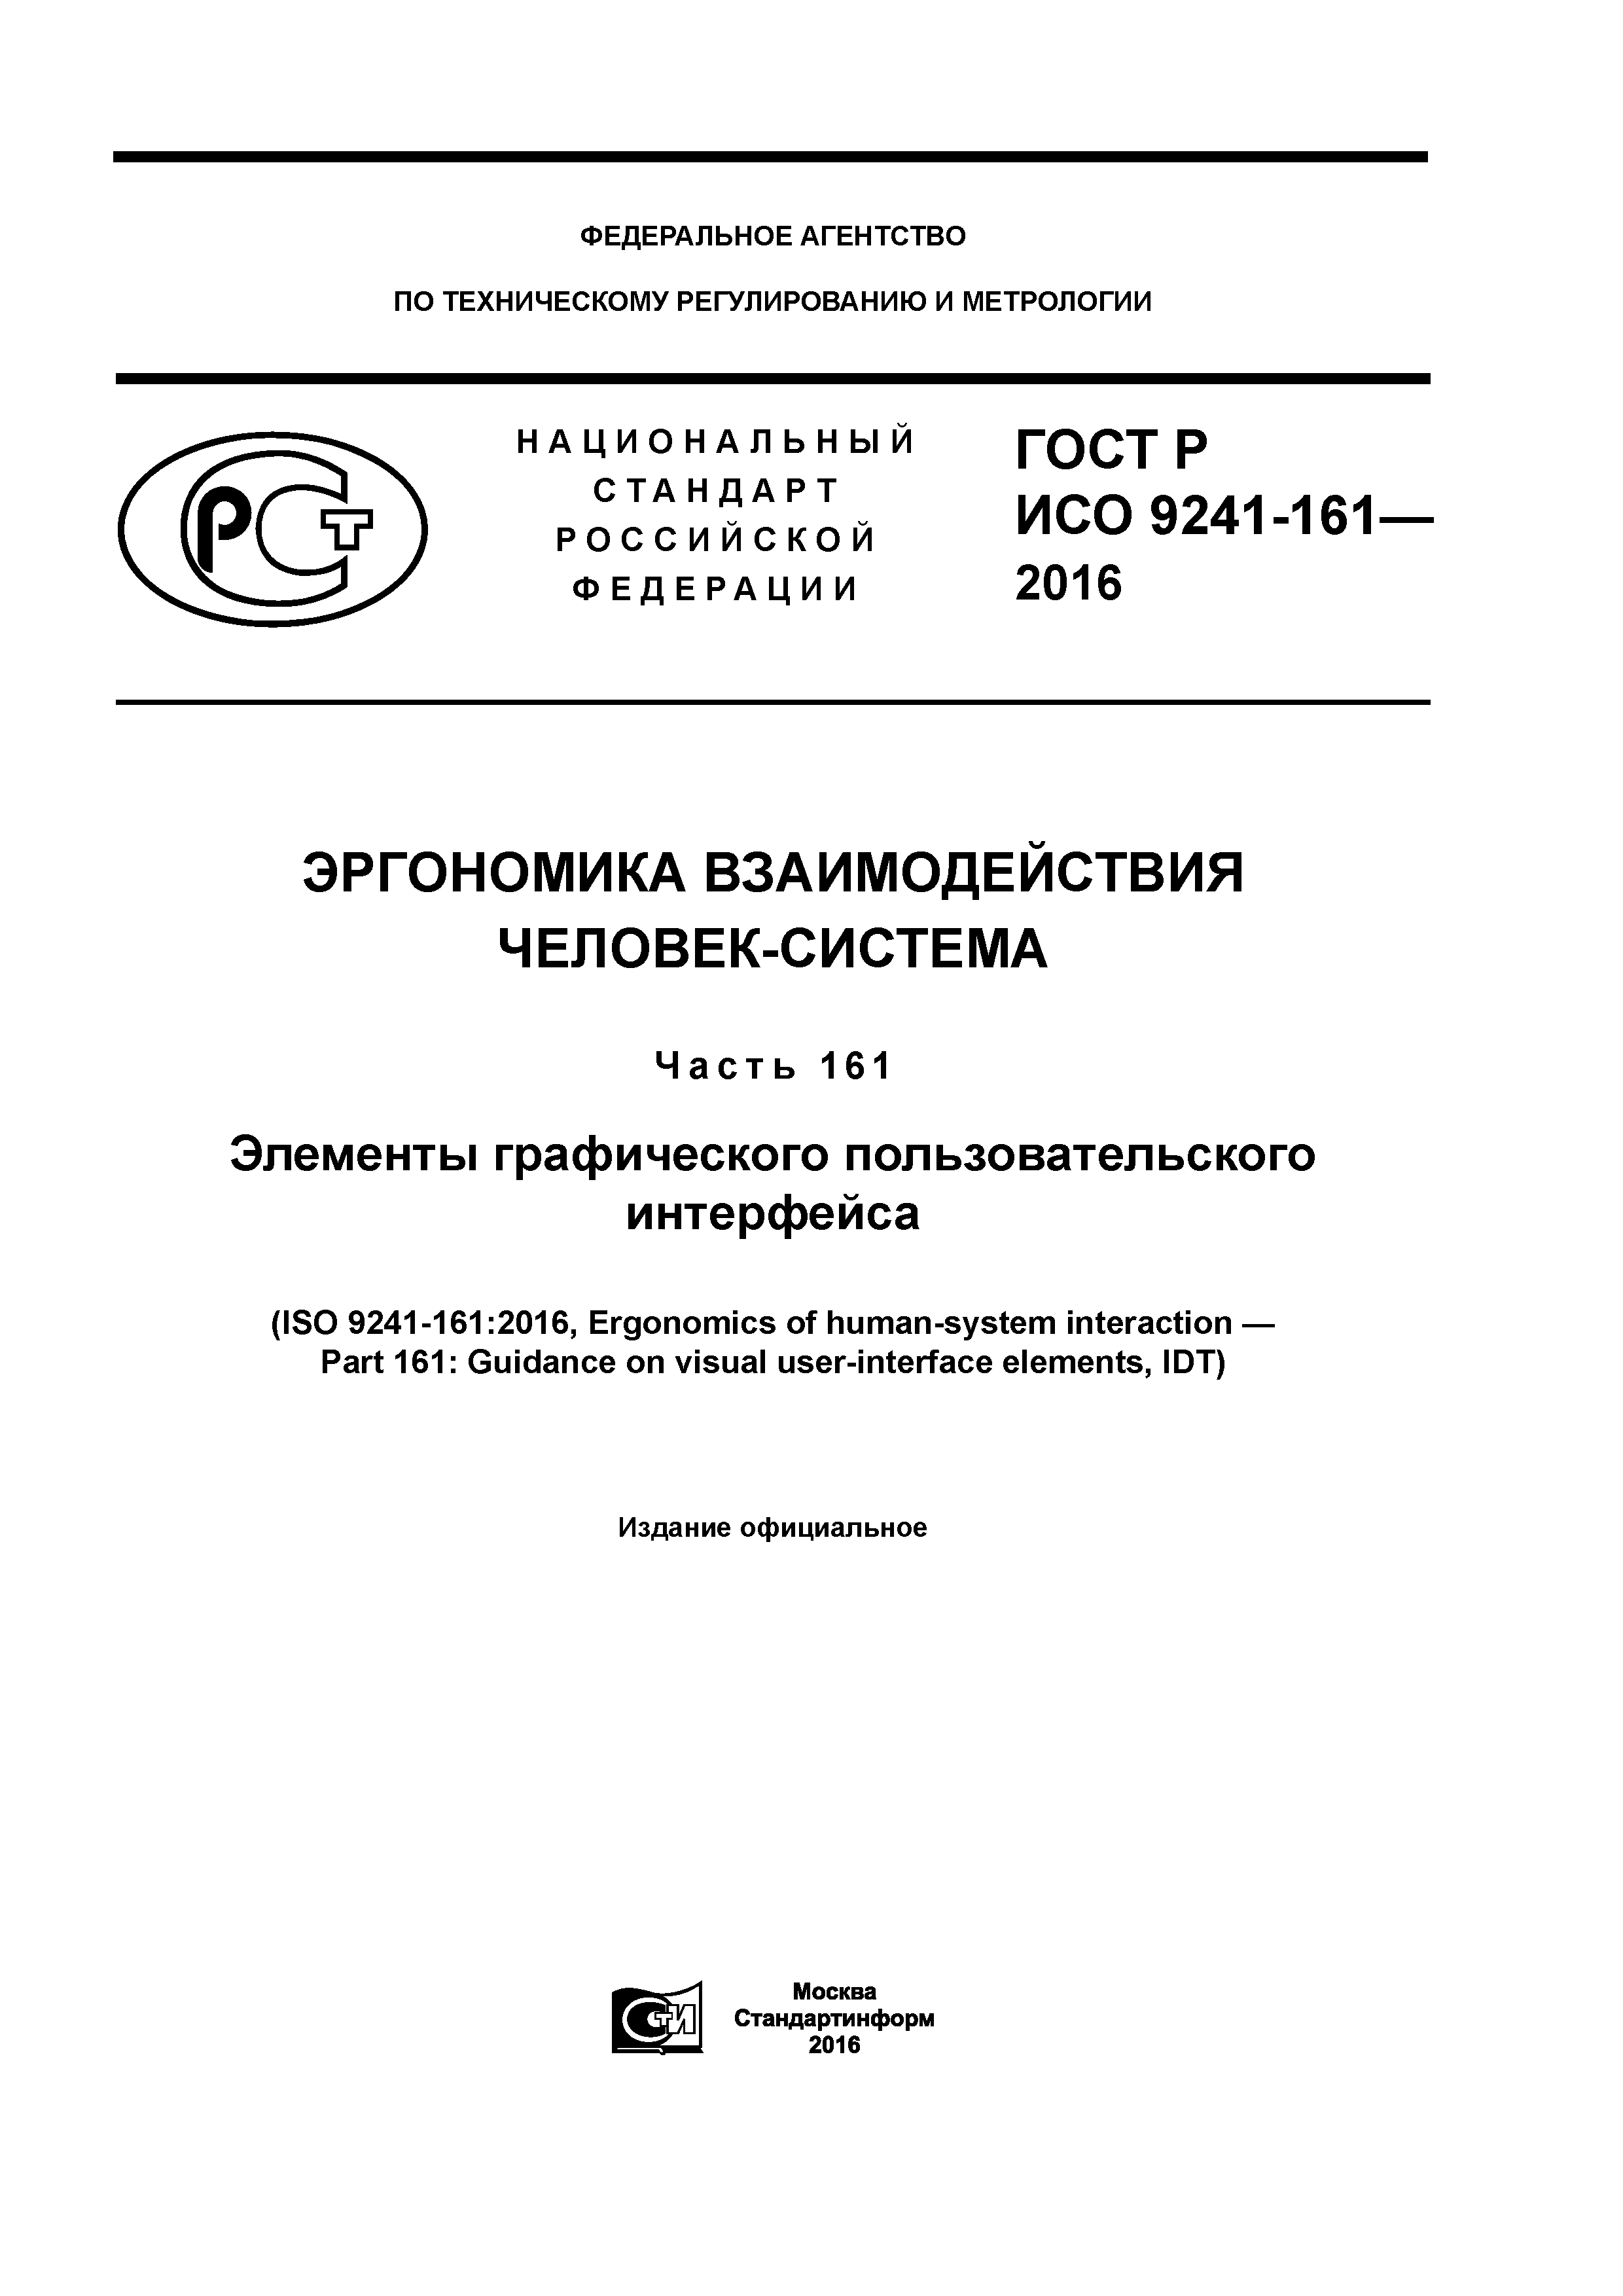 ГОСТ Р ИСО 9241-161-2016